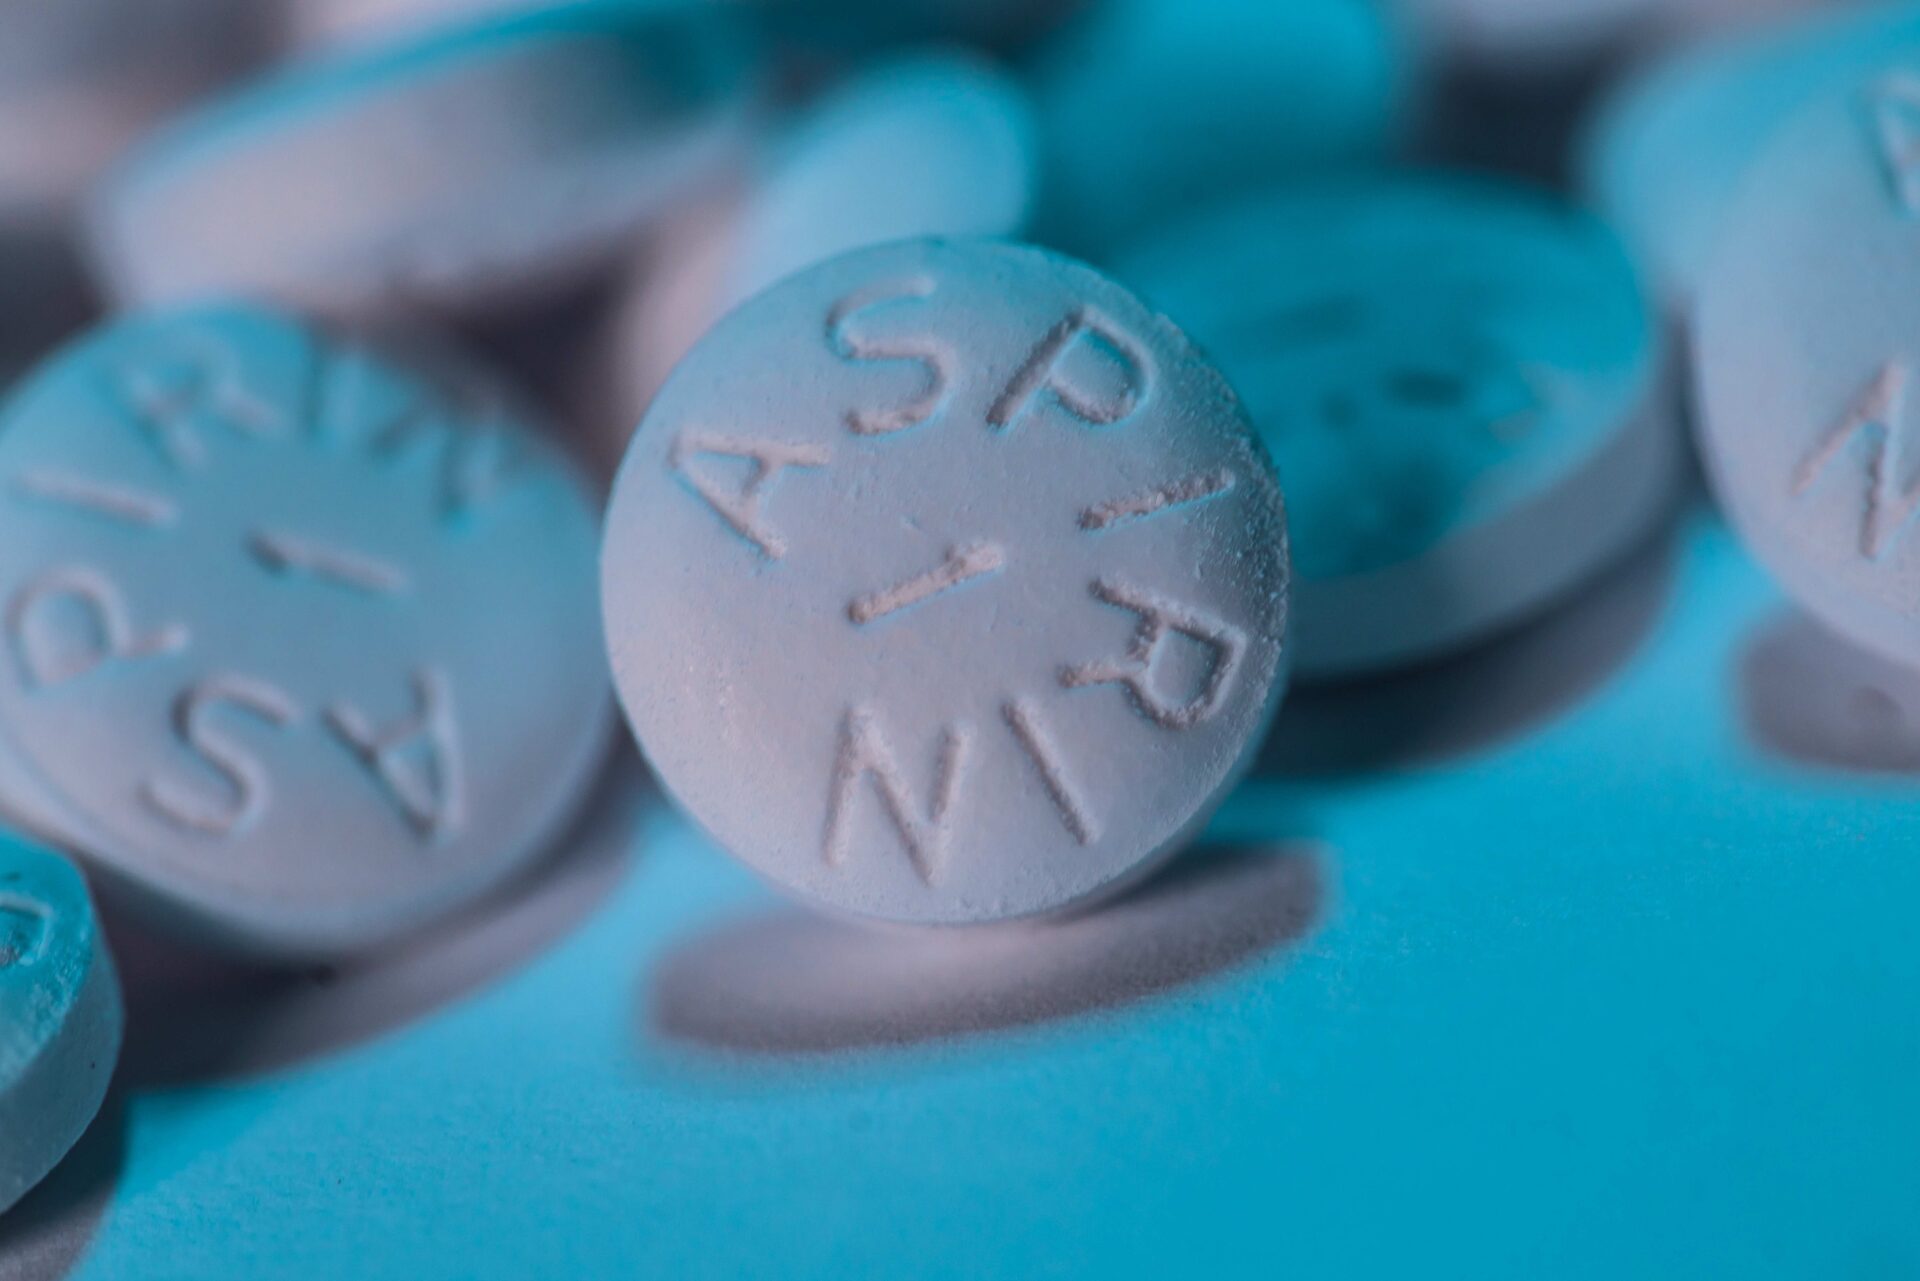 Using aspirin to prevent cancer